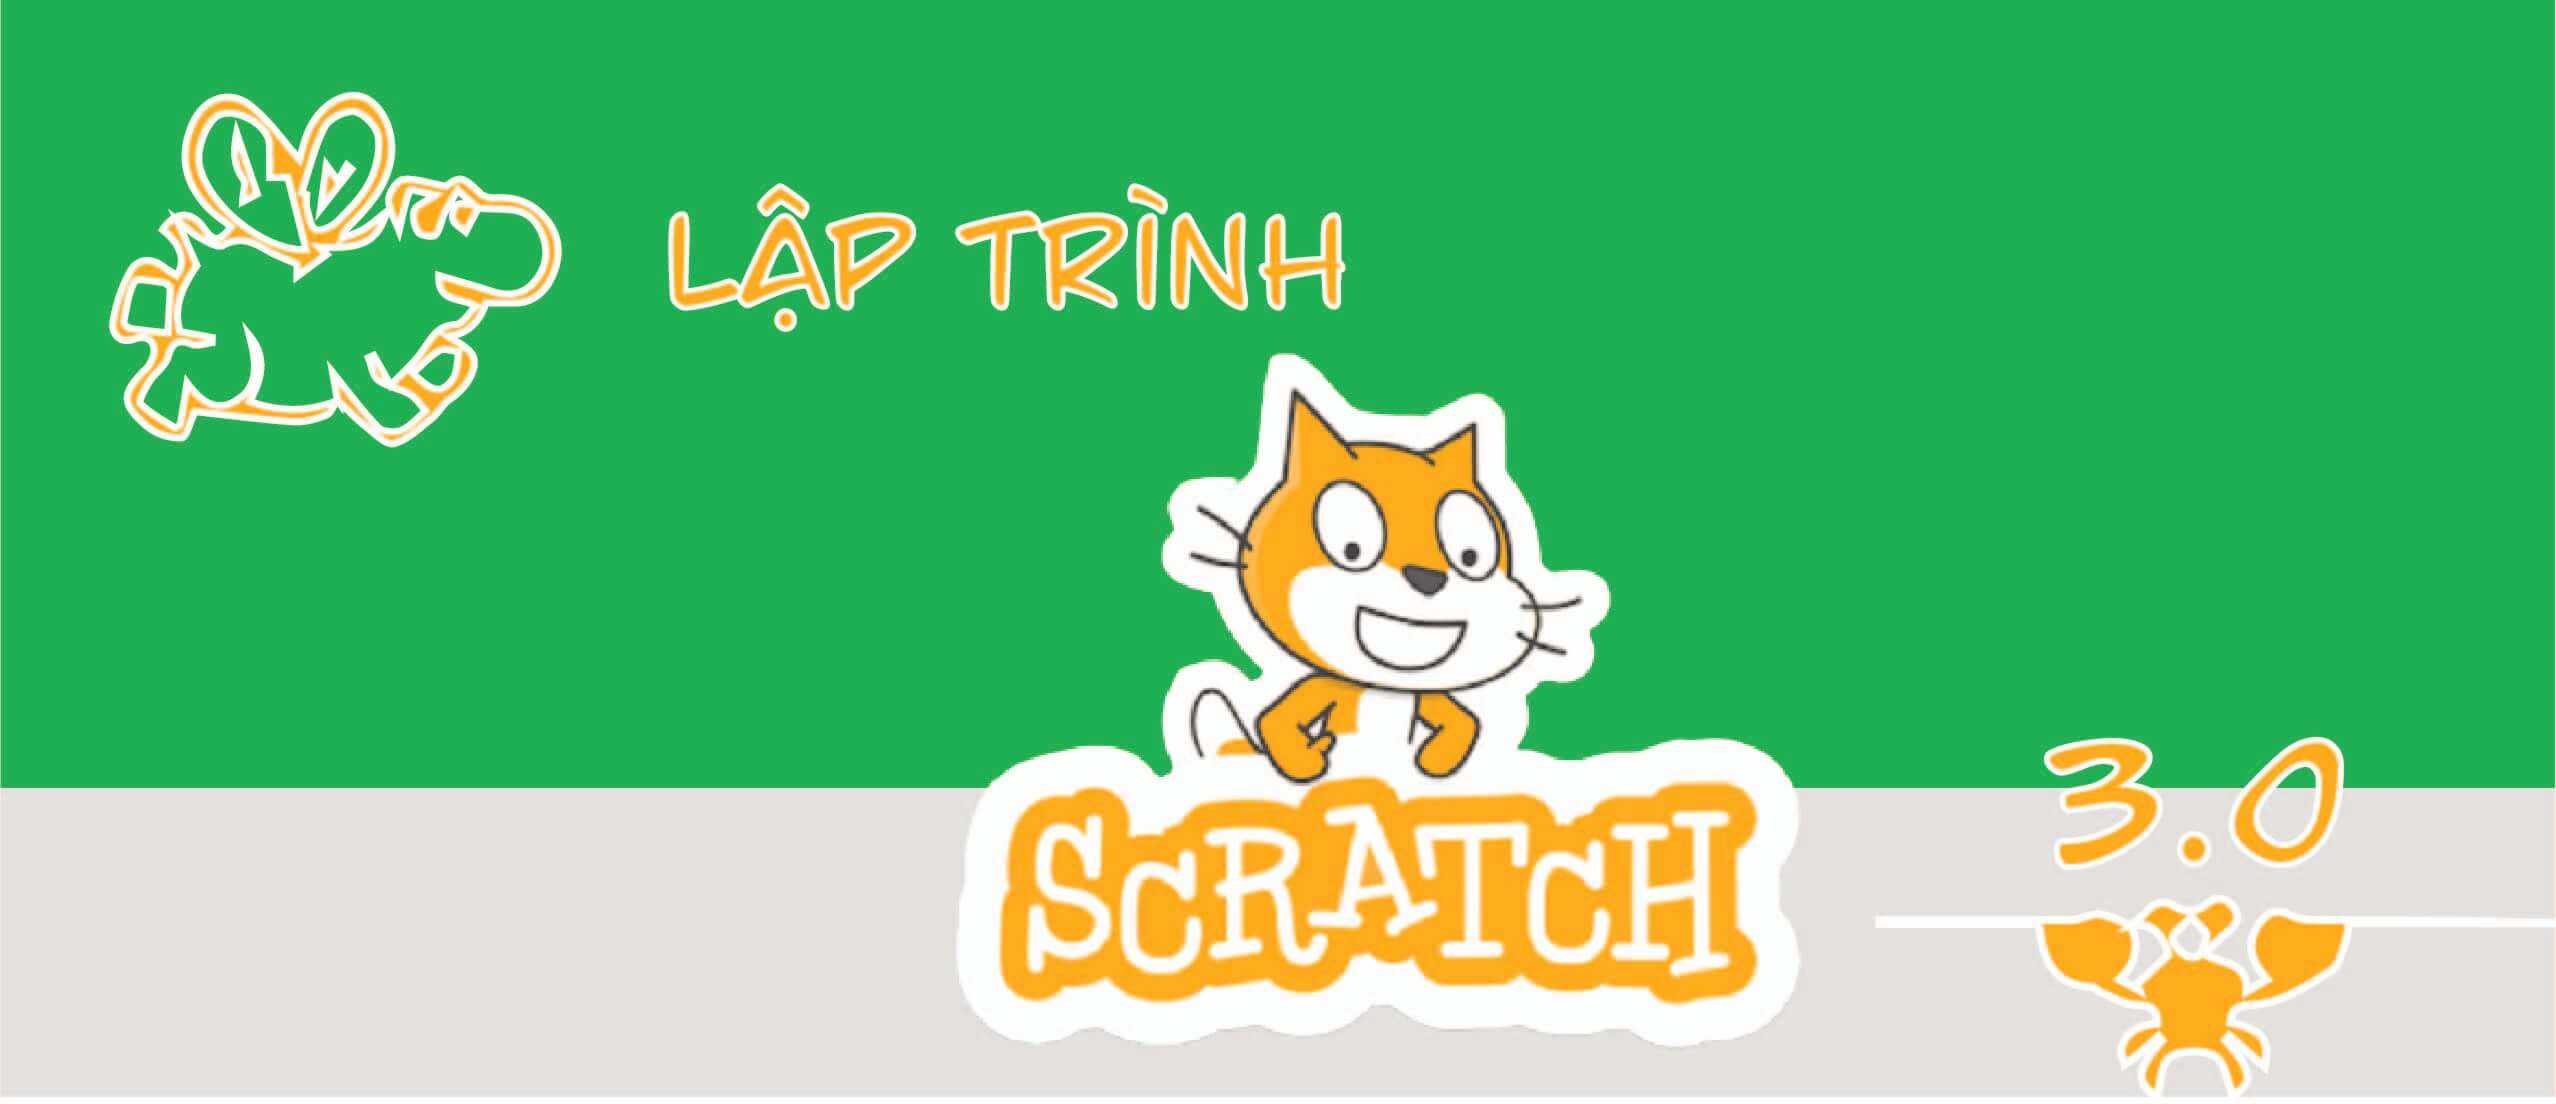 Lập trình với Scratch 3.0 Nâng cao